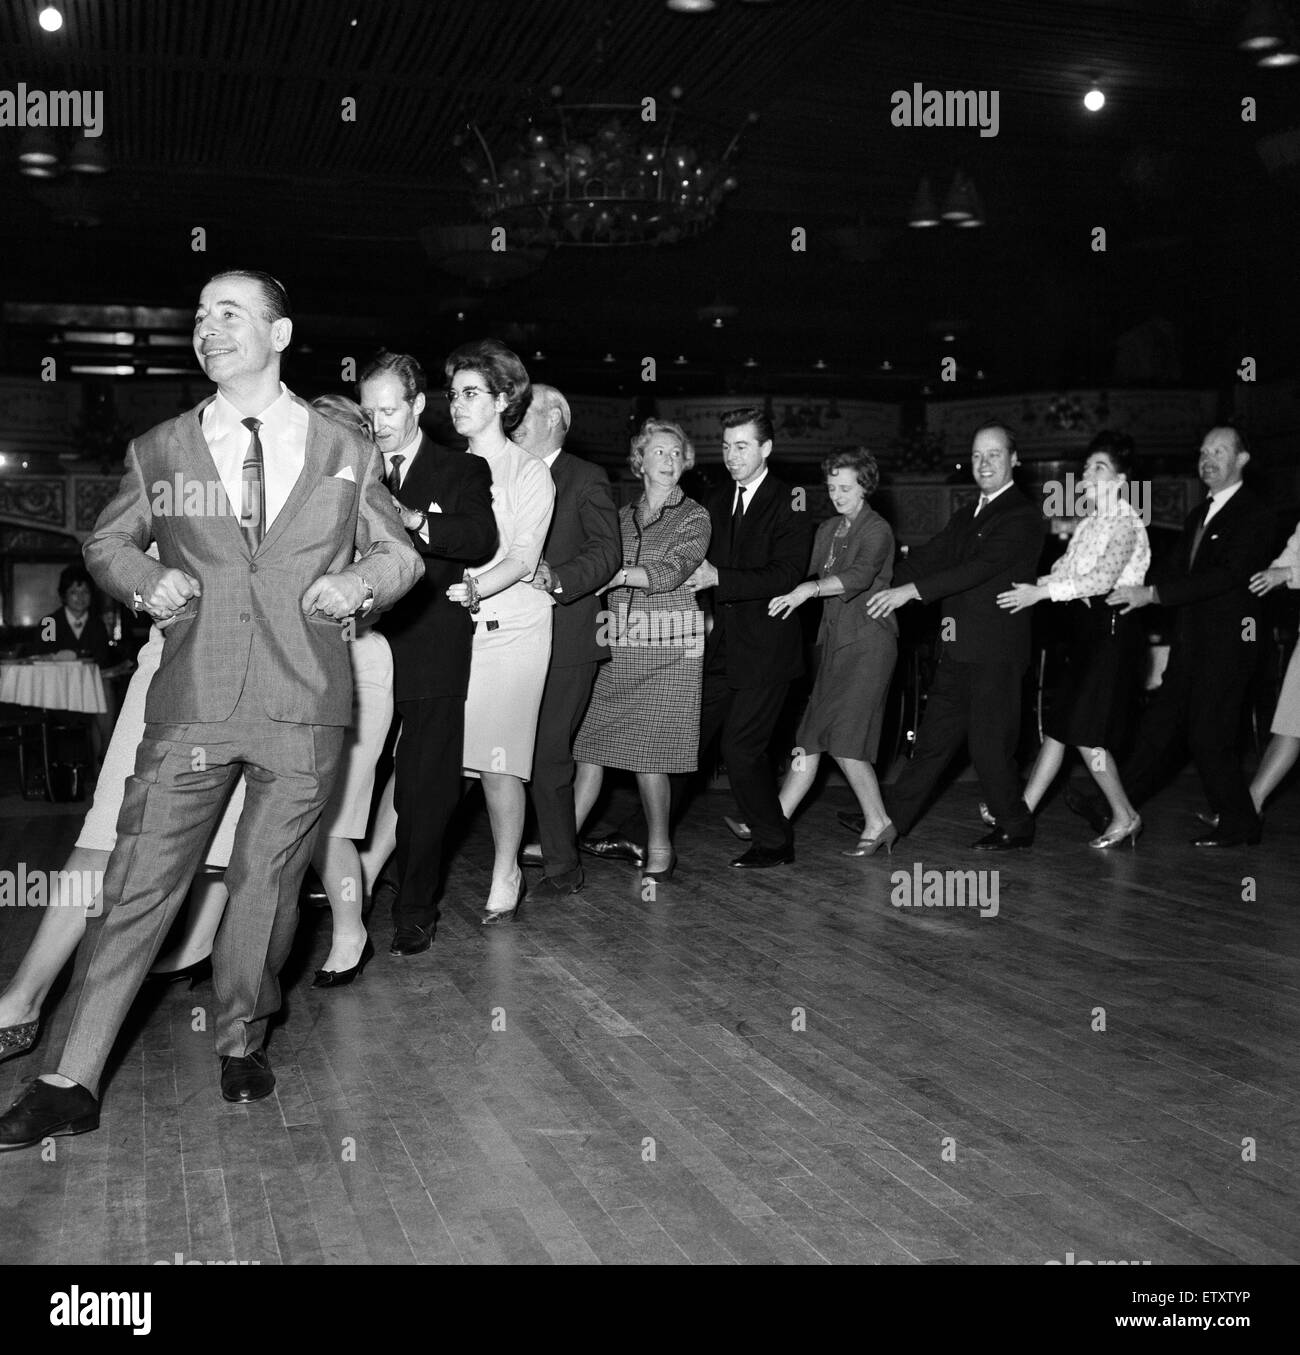 Bandleader Joe Loss eingeführt, einen neue Party-Tanz im Hammersmith Palais genannt die Finnjenka. Hier zeigt er den Tanz führt die Tänzer in die Straßen und zurück in der Dance Hall. 22. Oktober 1964. Stockfoto